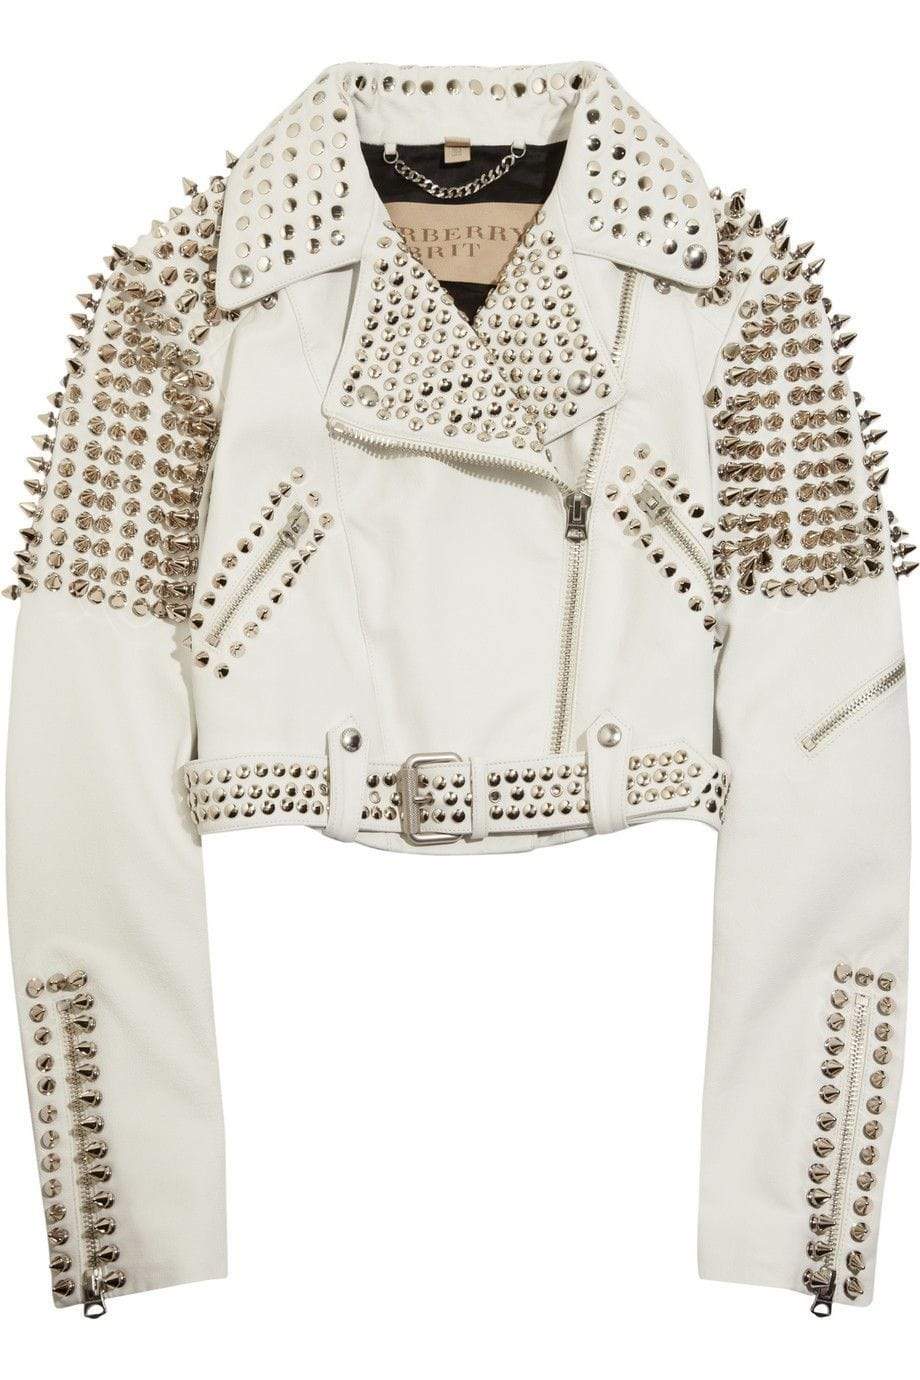 Women Fashion White Leather Gothic Studded Jacket